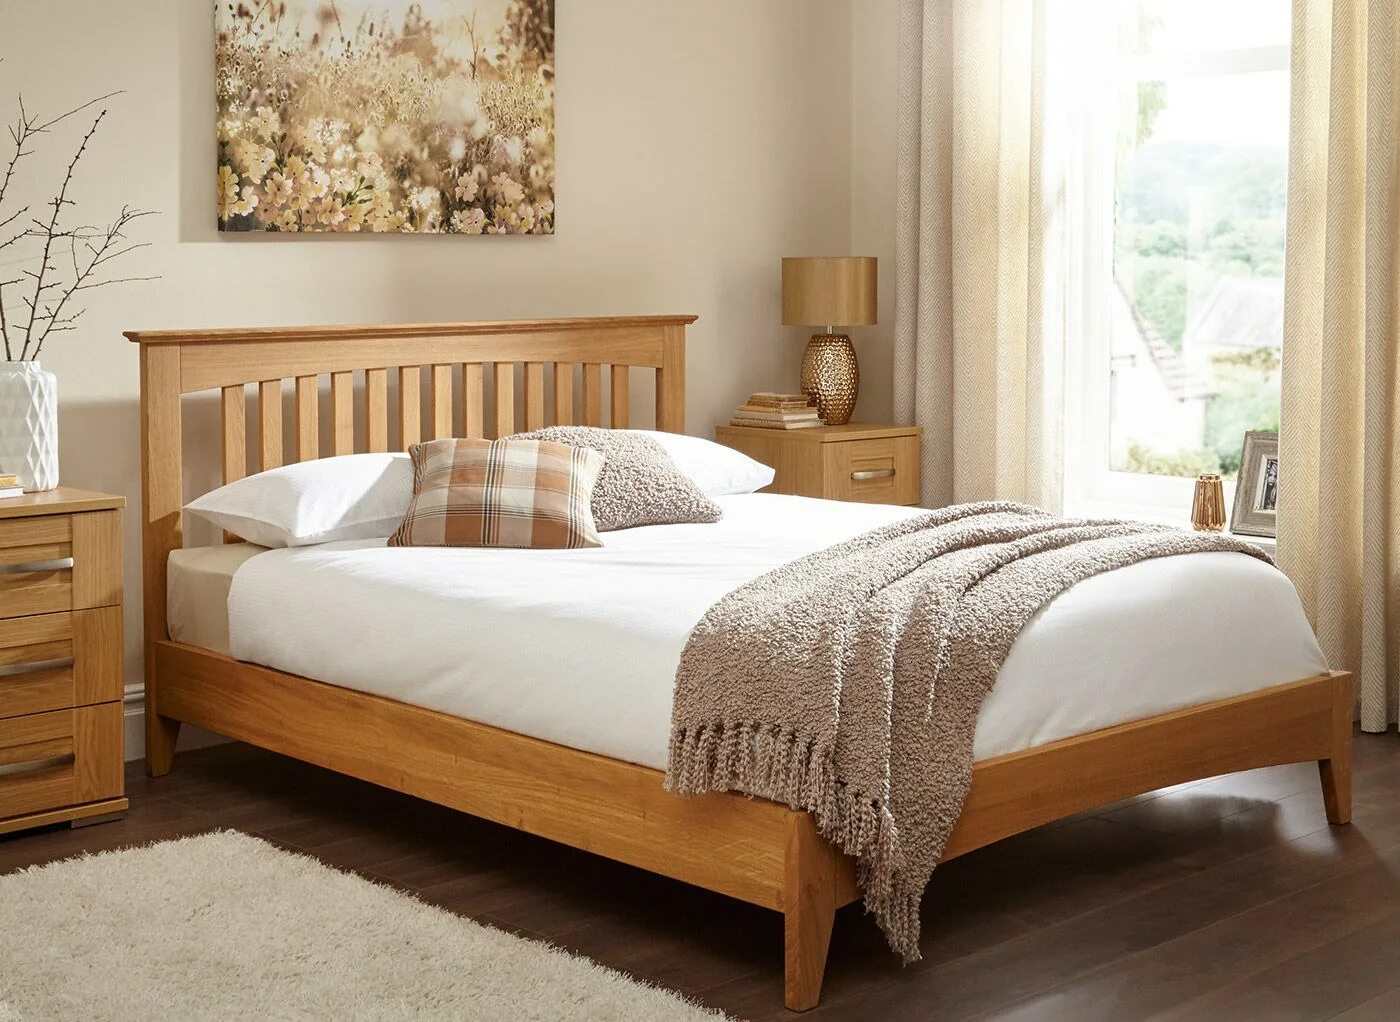 Изголовье кровати из дерева. Кровать с деревянным изголовьем. Деревянная кровать с деревянным изголовьем. Кровать с деревянной спинкой. Спальня с деревянной кроватью.